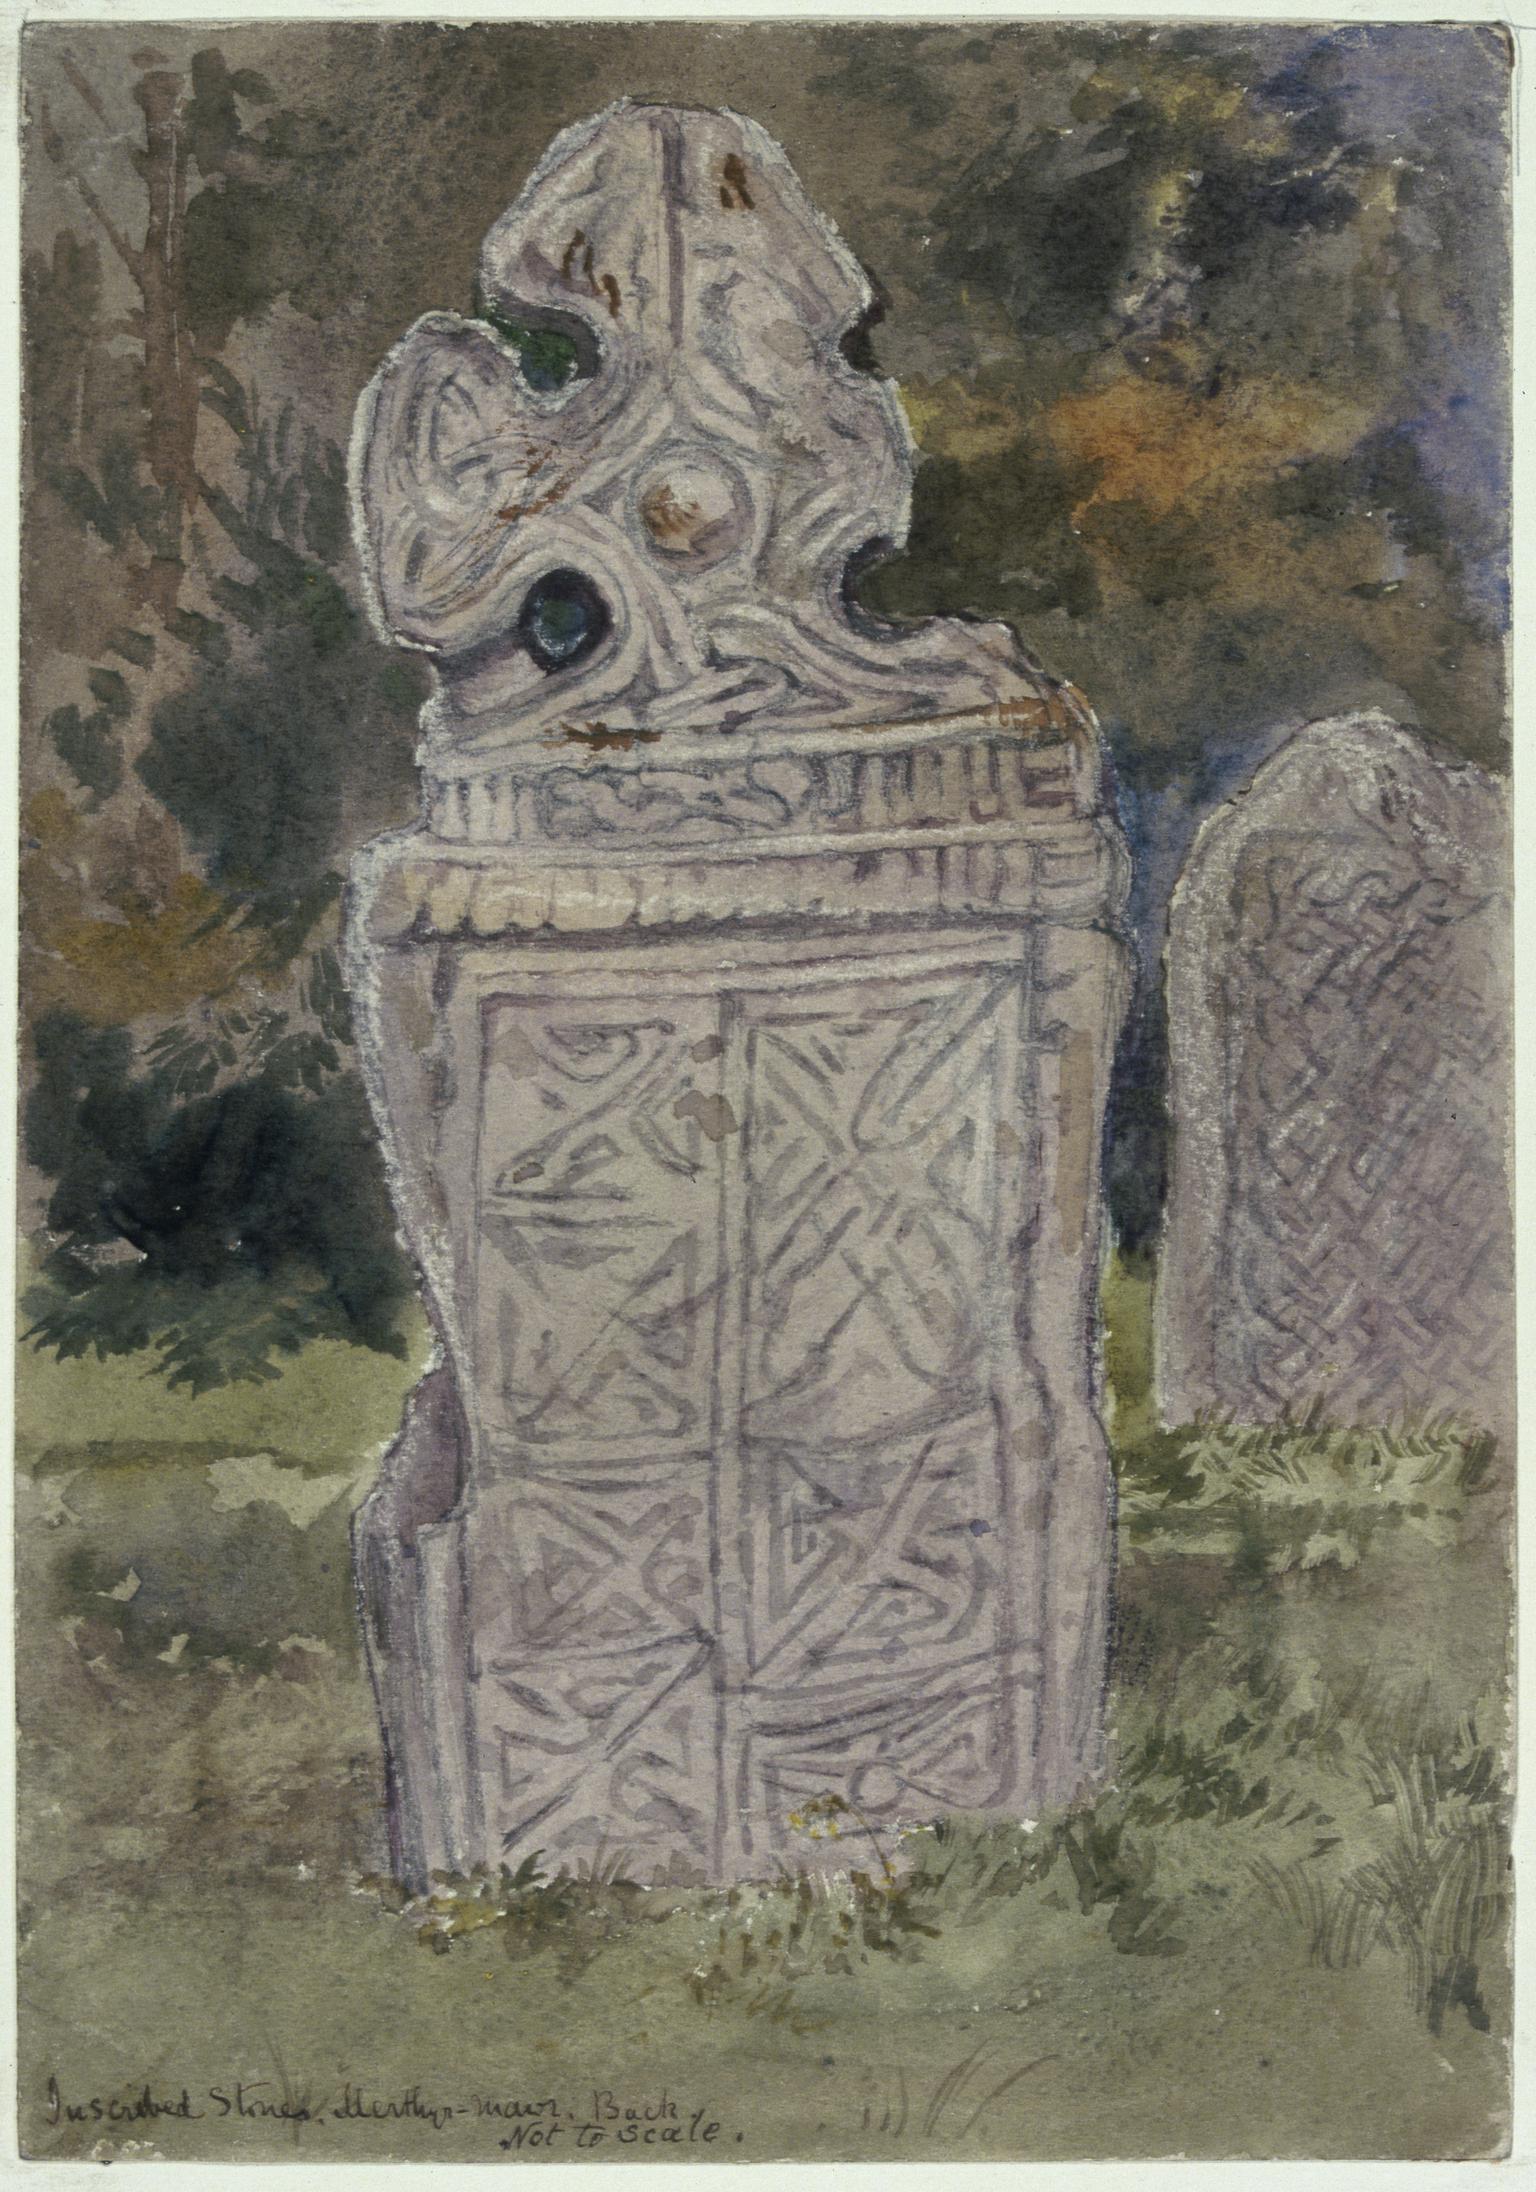 Inscribed Stones, Merthyr Mawr